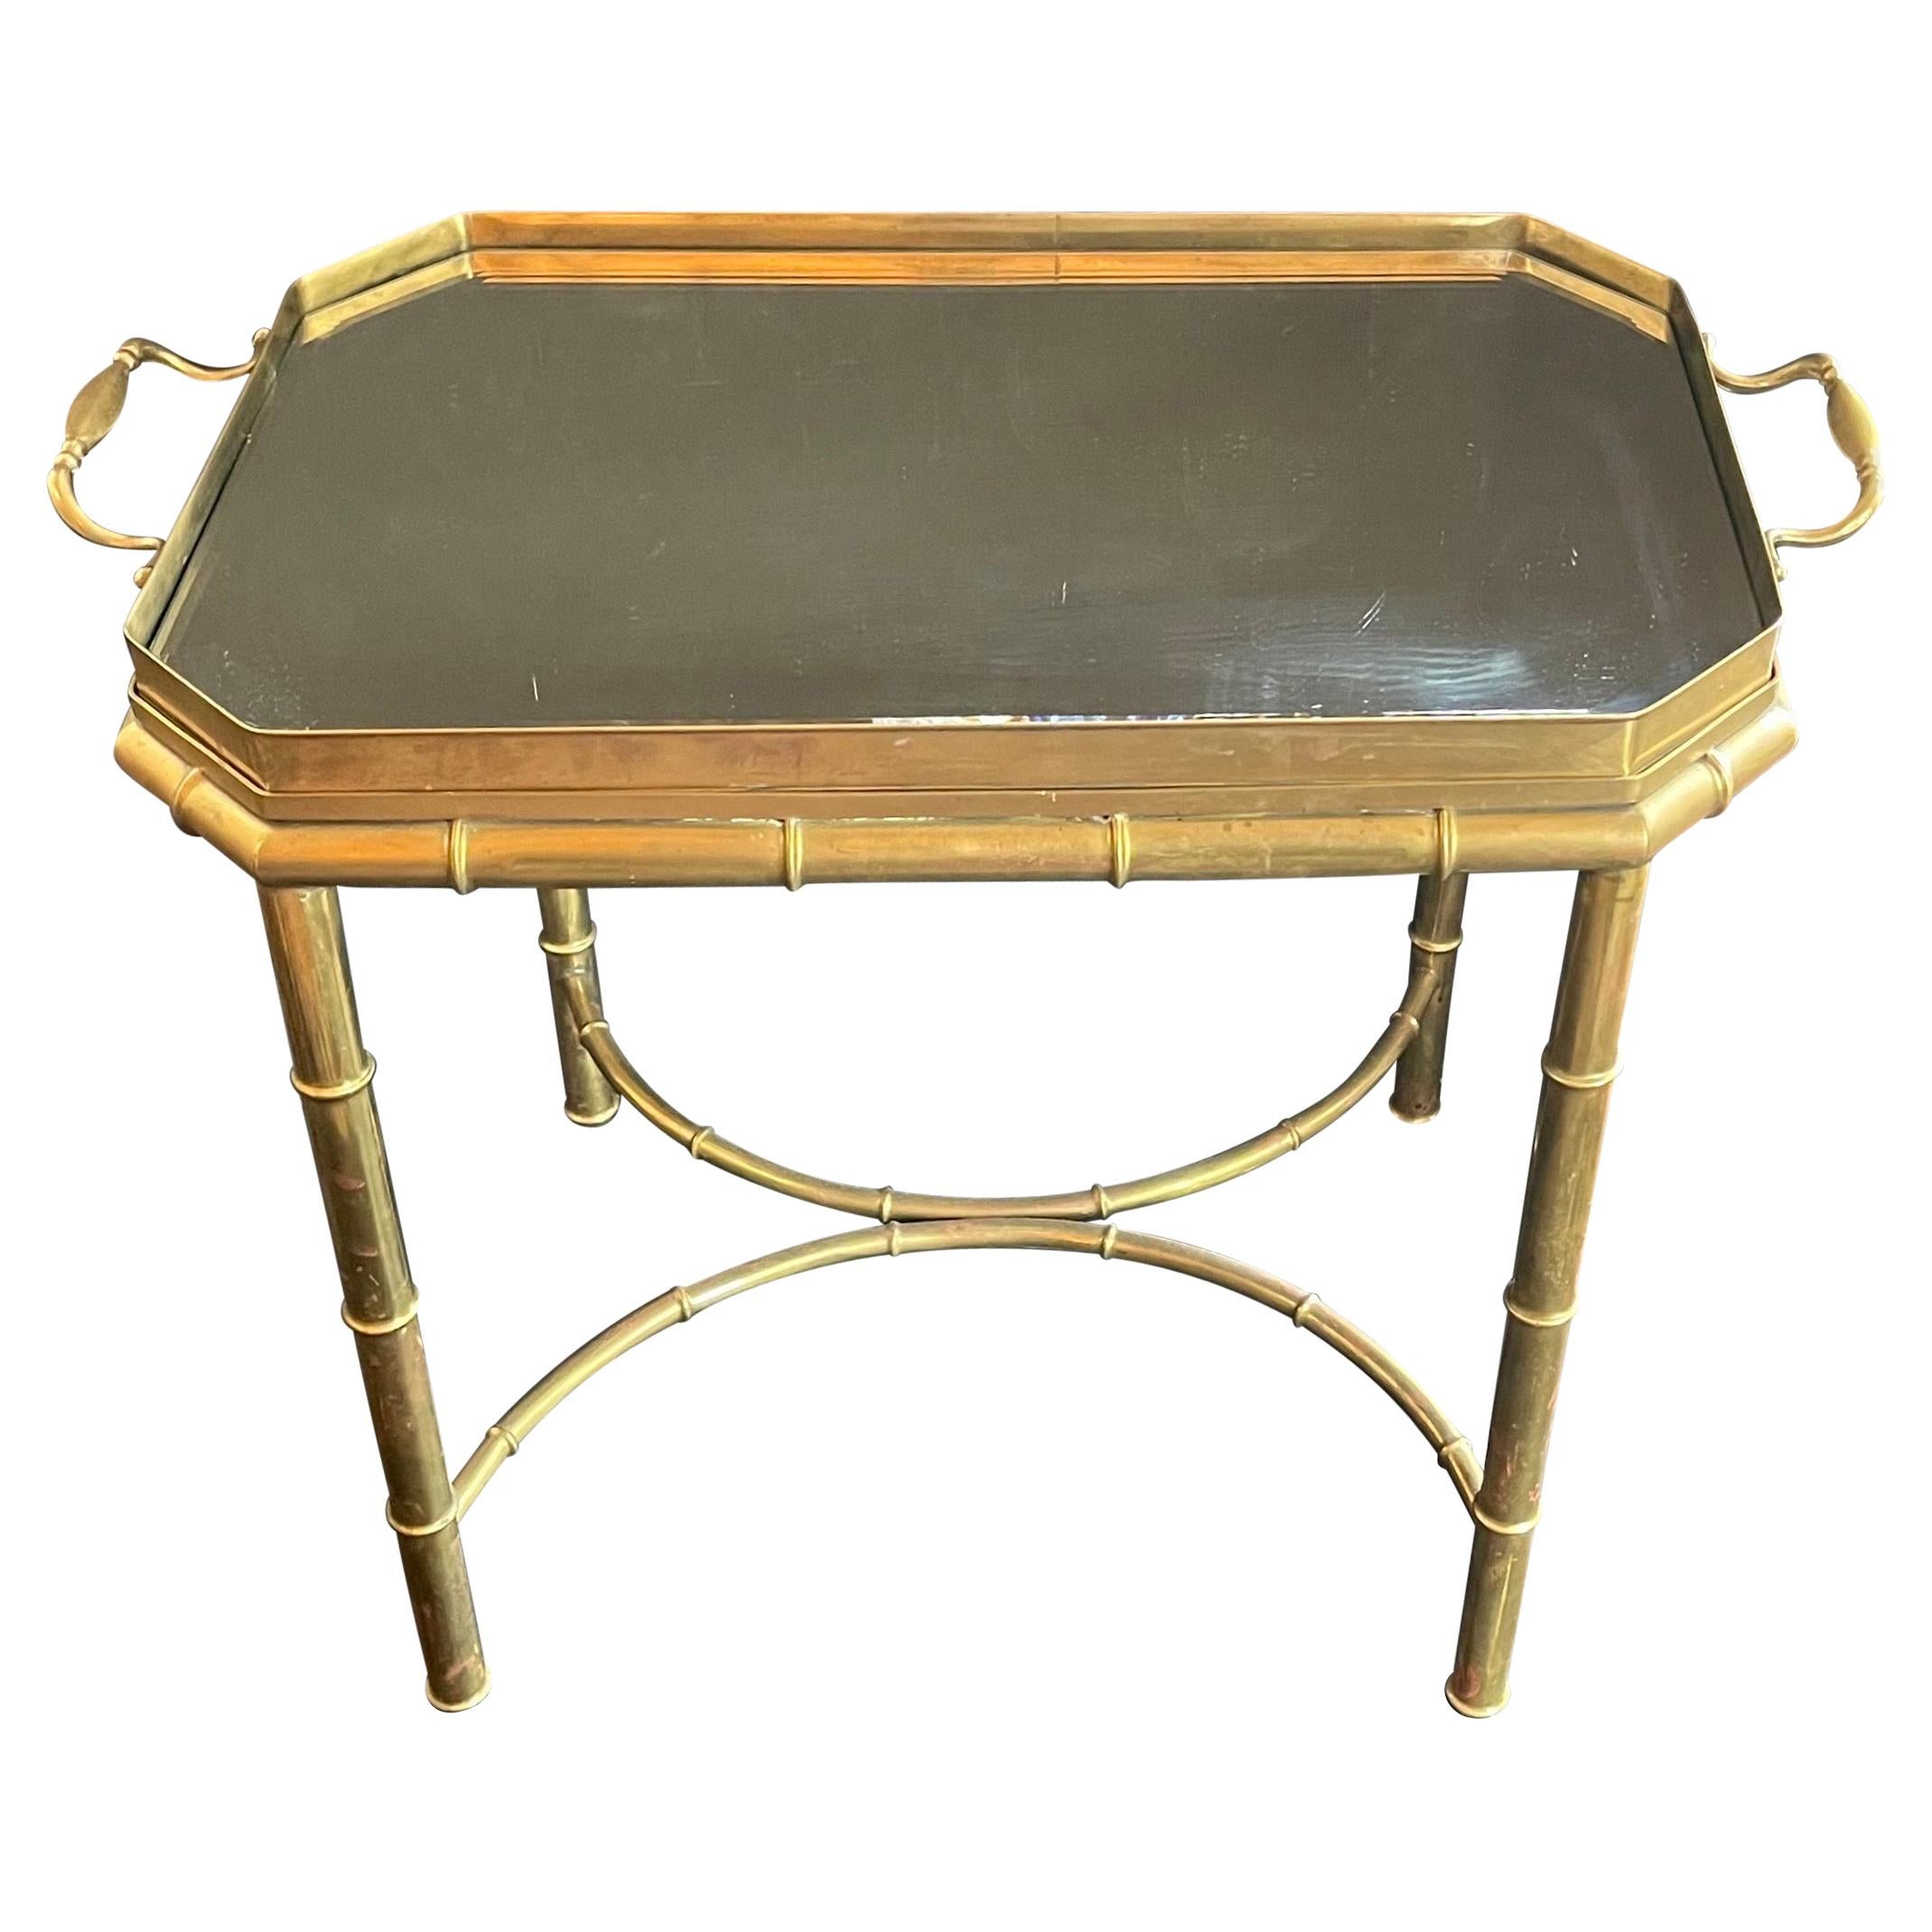 Merveilleuse table basse en laiton, bronze, faux bambou et miroir biseauté avec plateau en forme de galerie